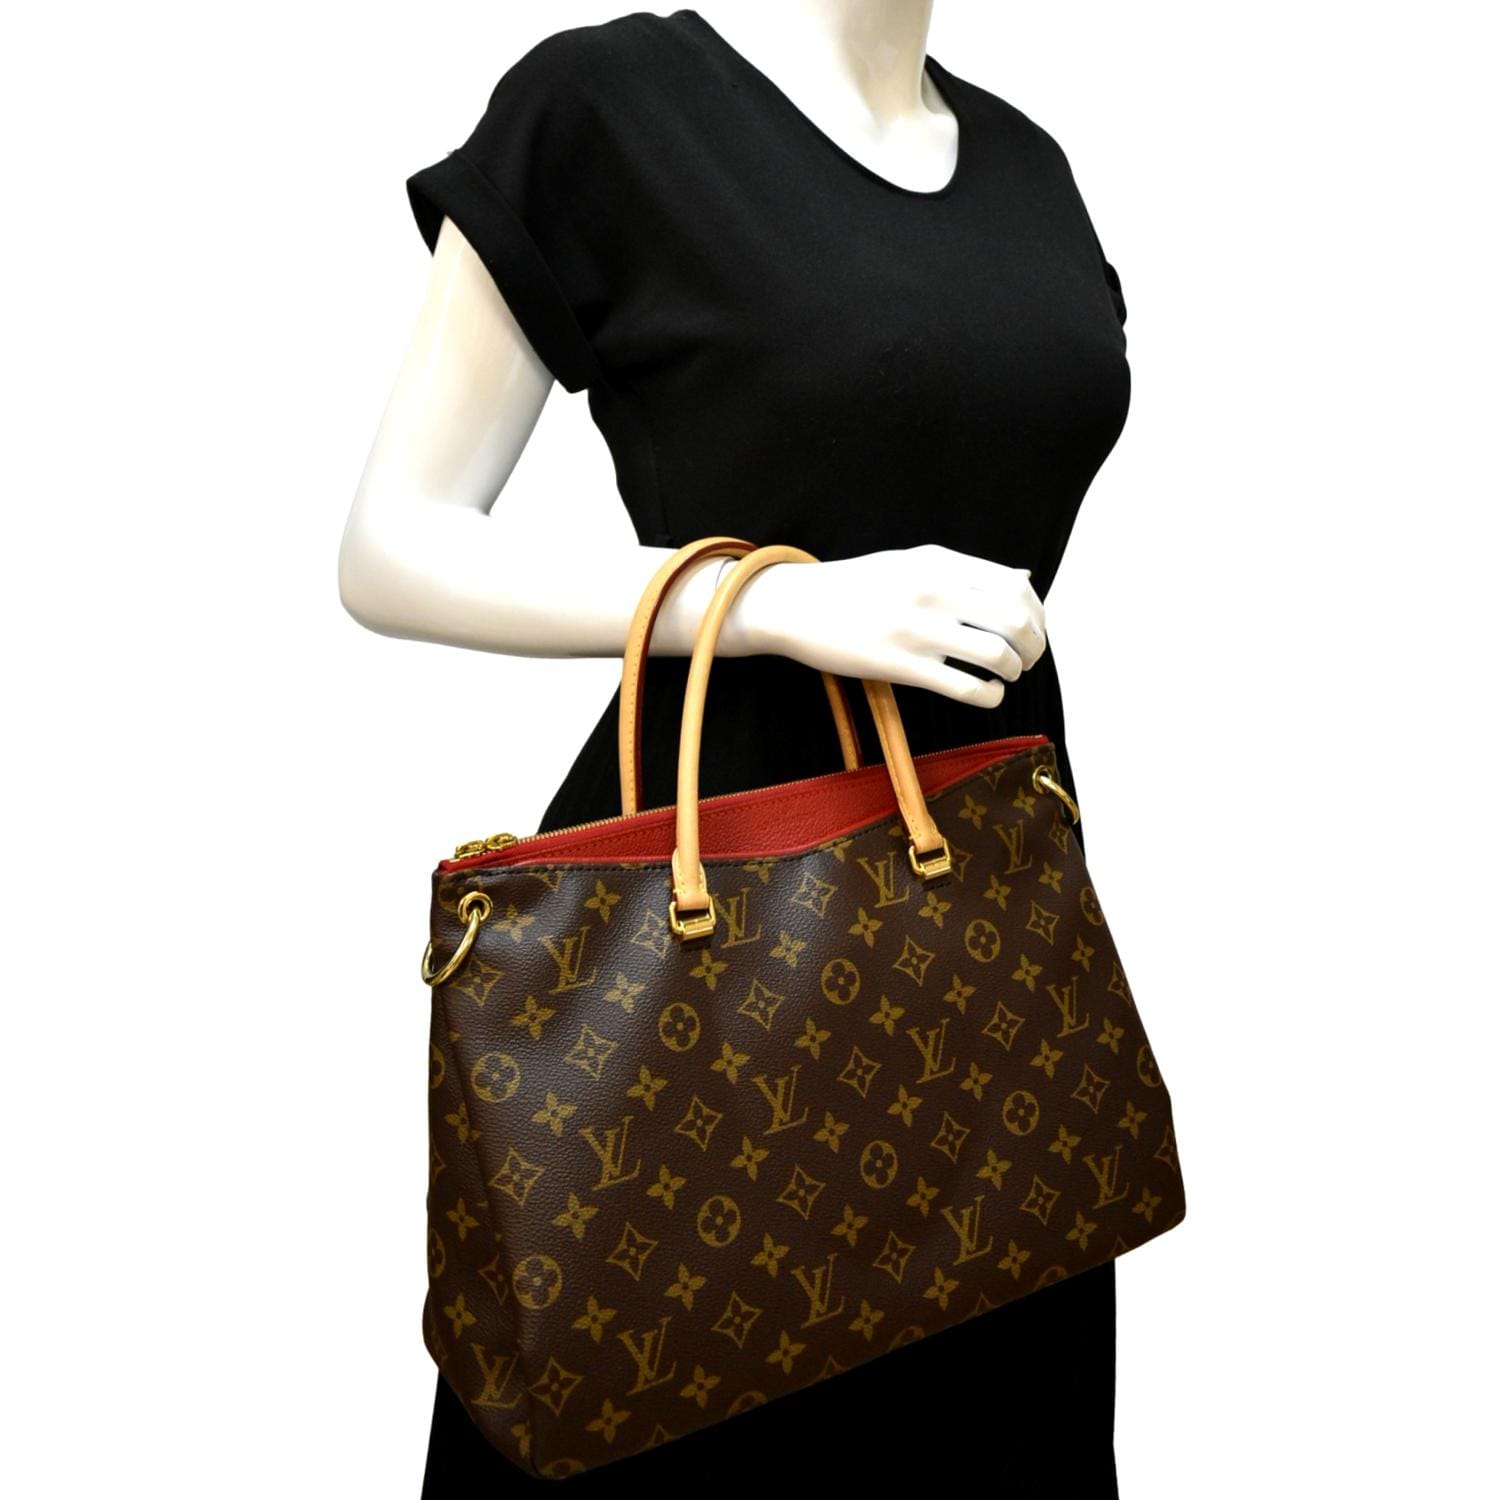 Louis Vuitton Louis Vuitton Pallas Medium Bags & Handbags for Women, Authenticity Guaranteed